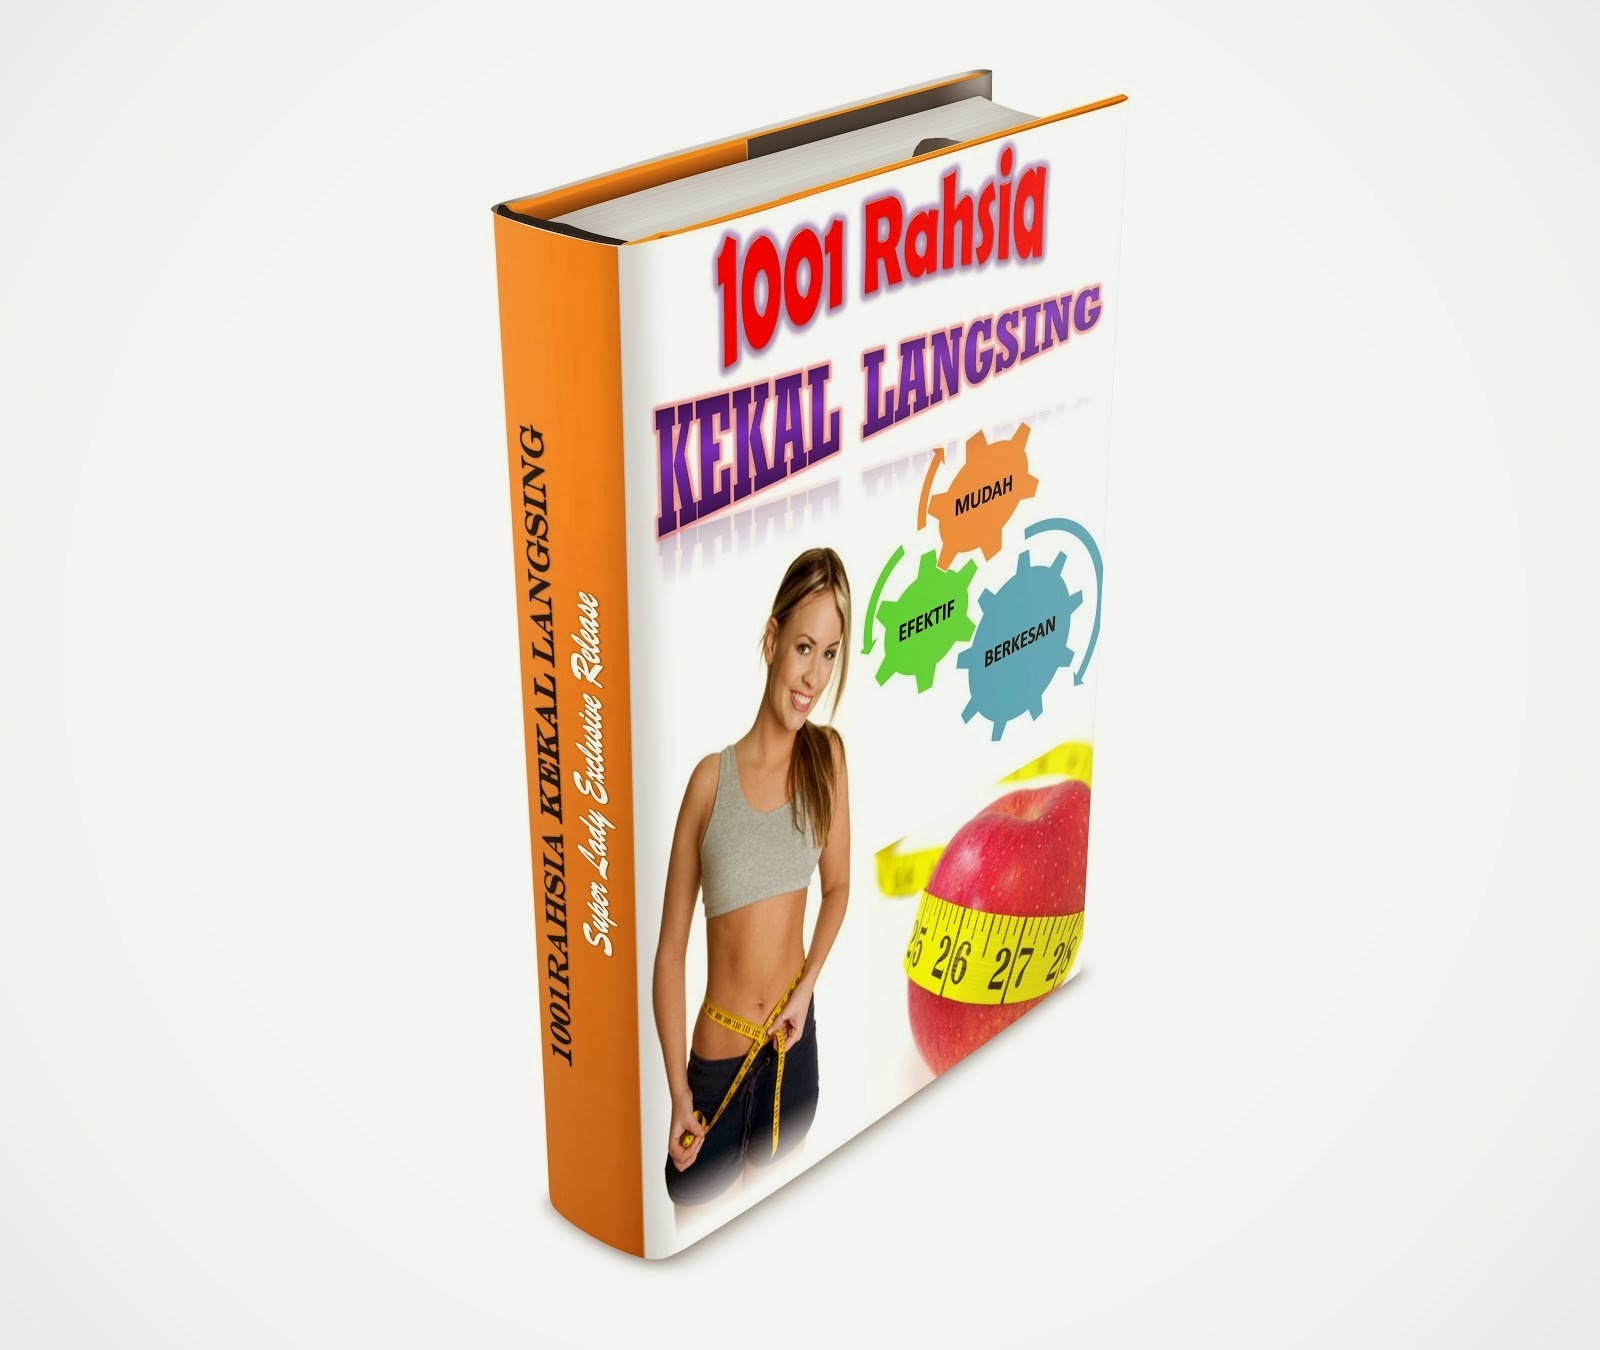 eBook 1001 Rahsia Kekal Langsing